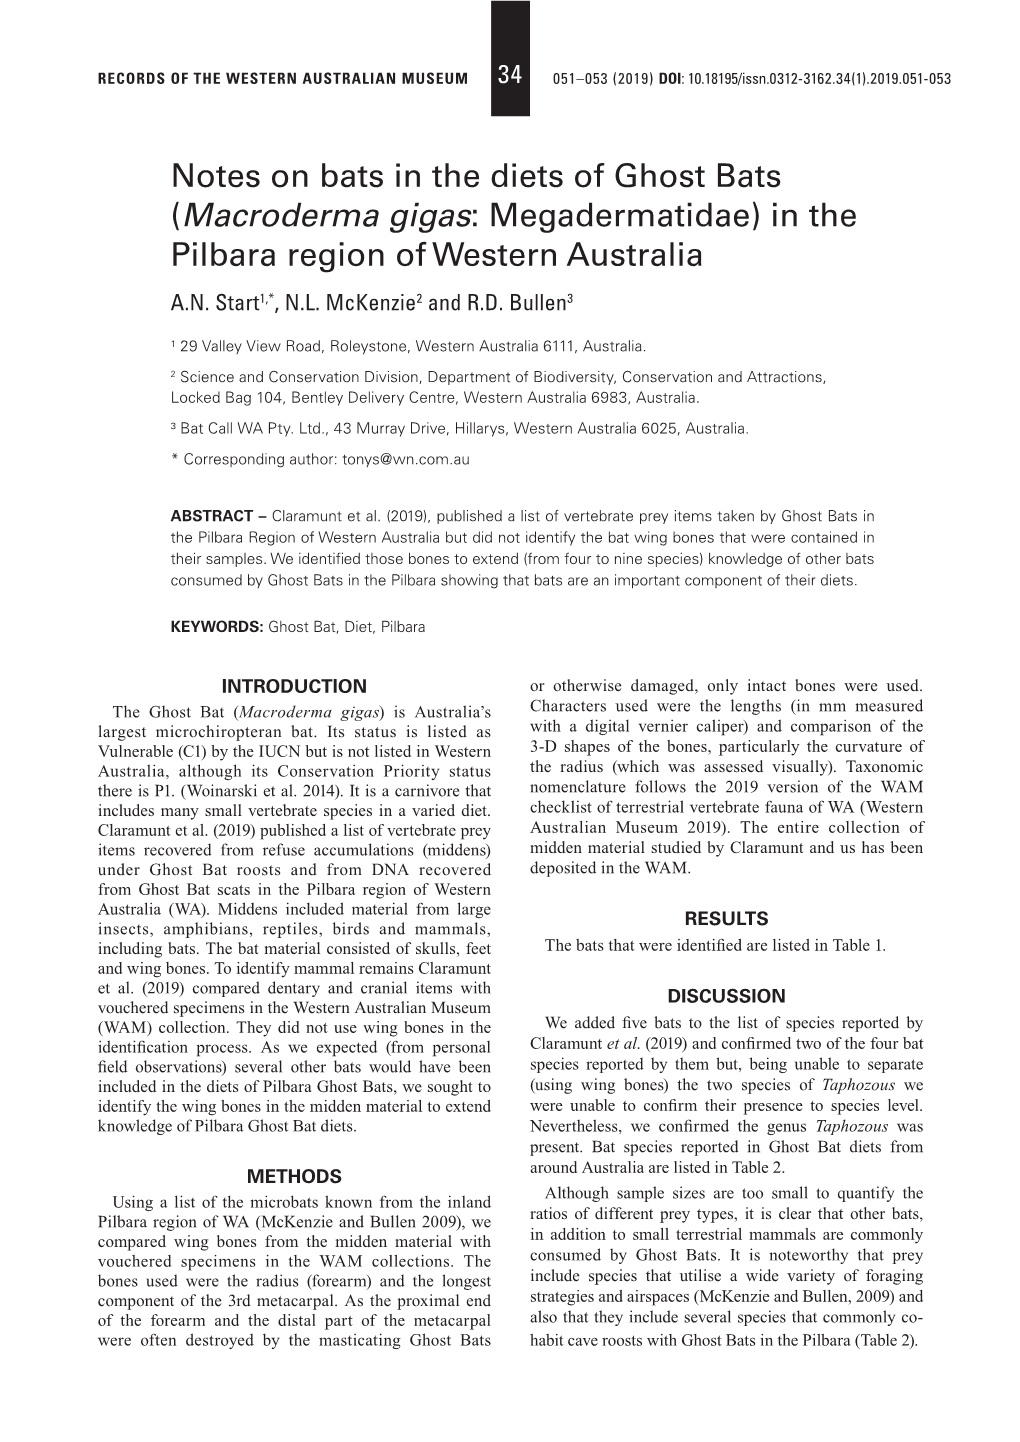 (Macroderma Gigas: Megadermatidae) in the Pilbara Region of Western Australia A.N